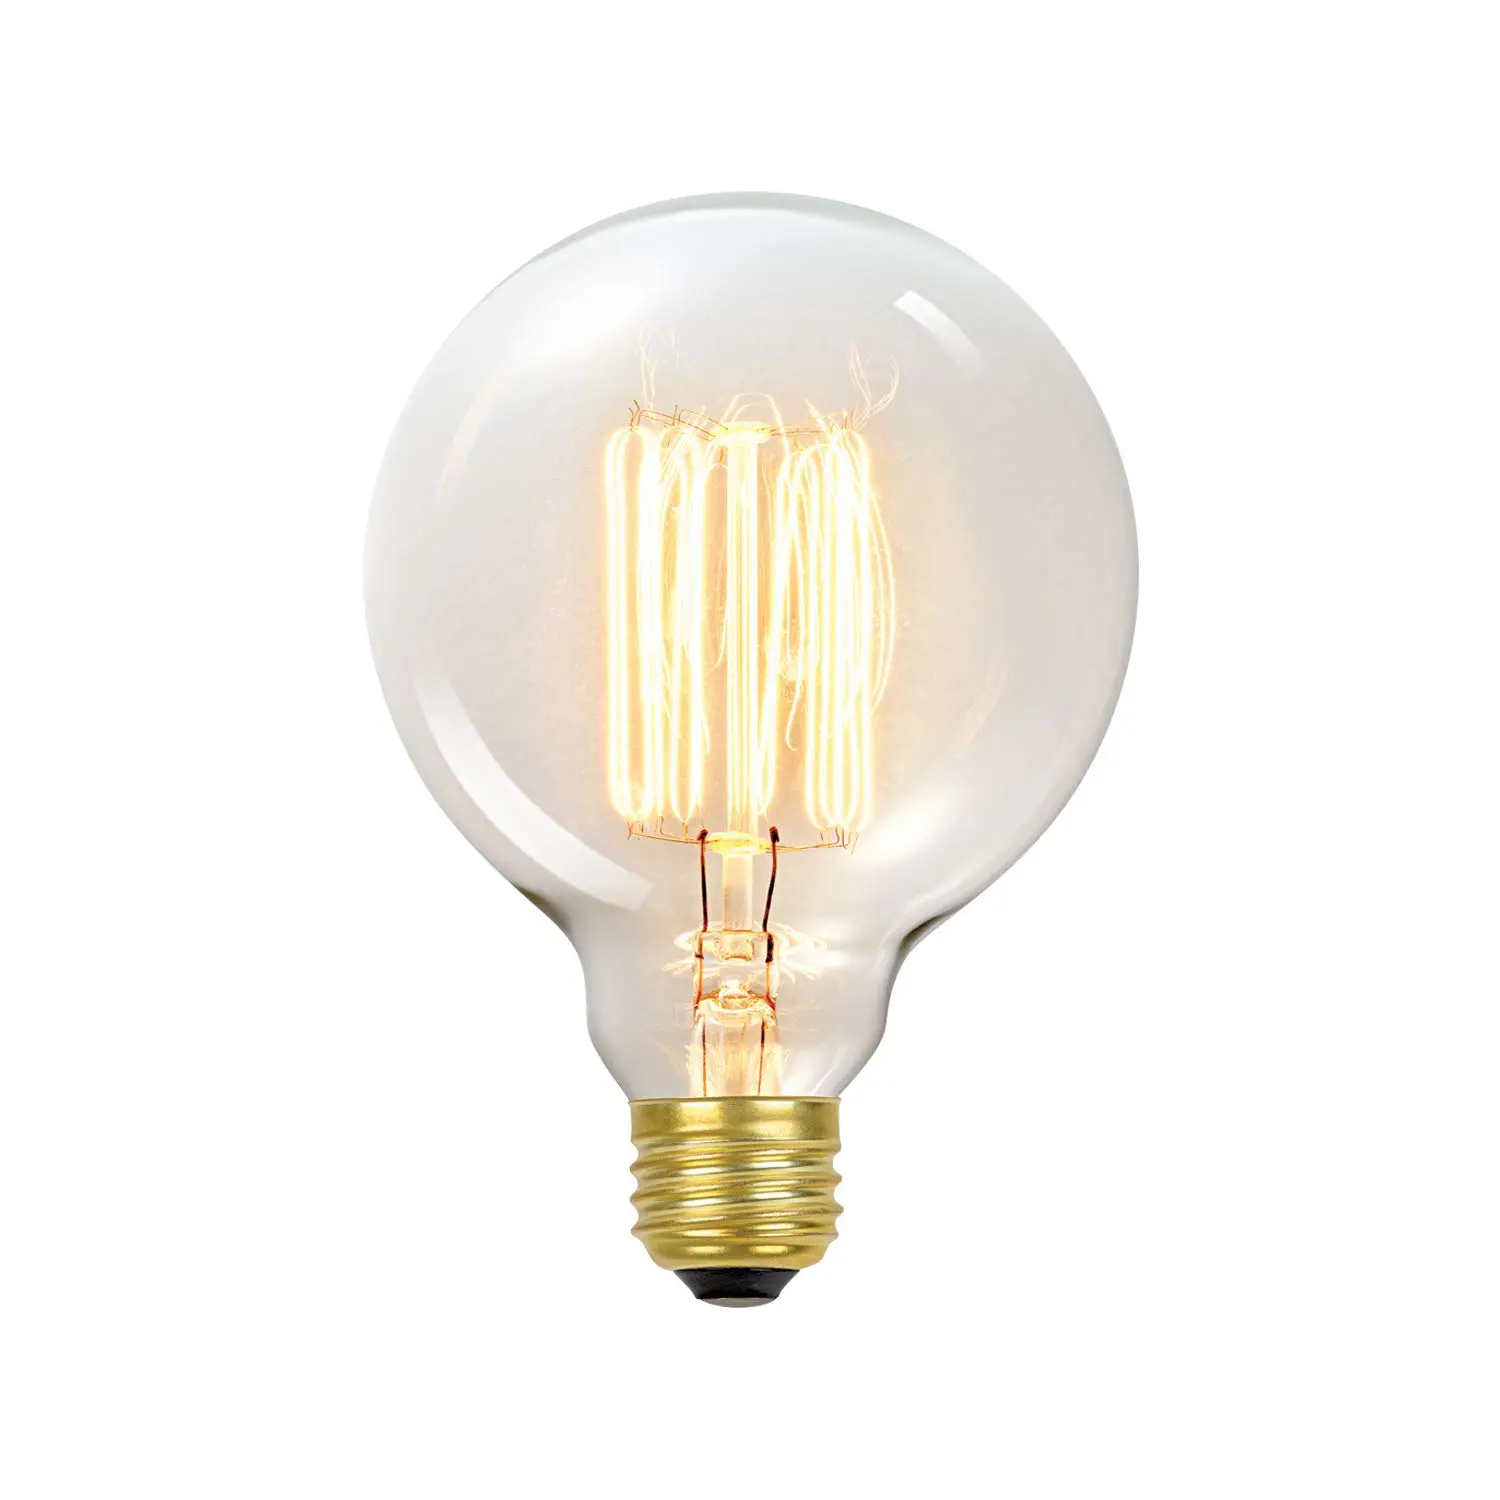 Lámpara de filamento de tungsteno mejorada: eficiencia y calidad de luz